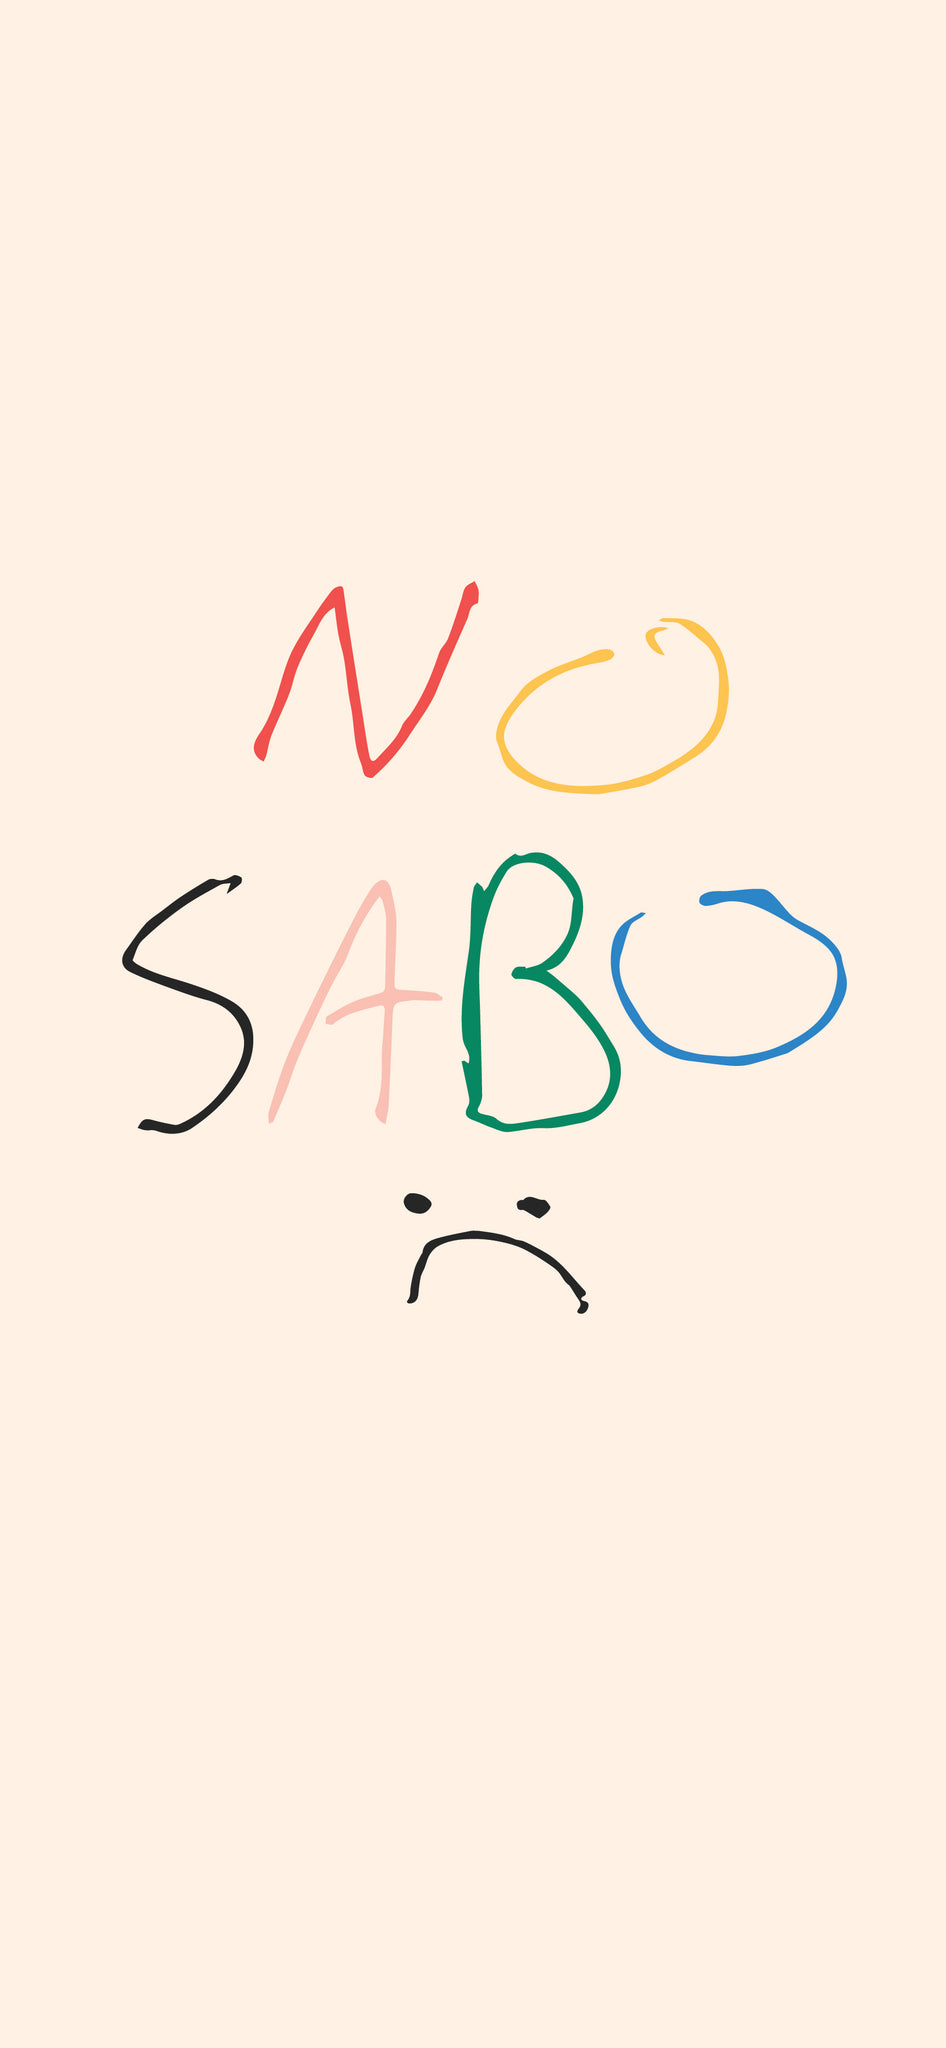 No Sabo Phone Wallpaper